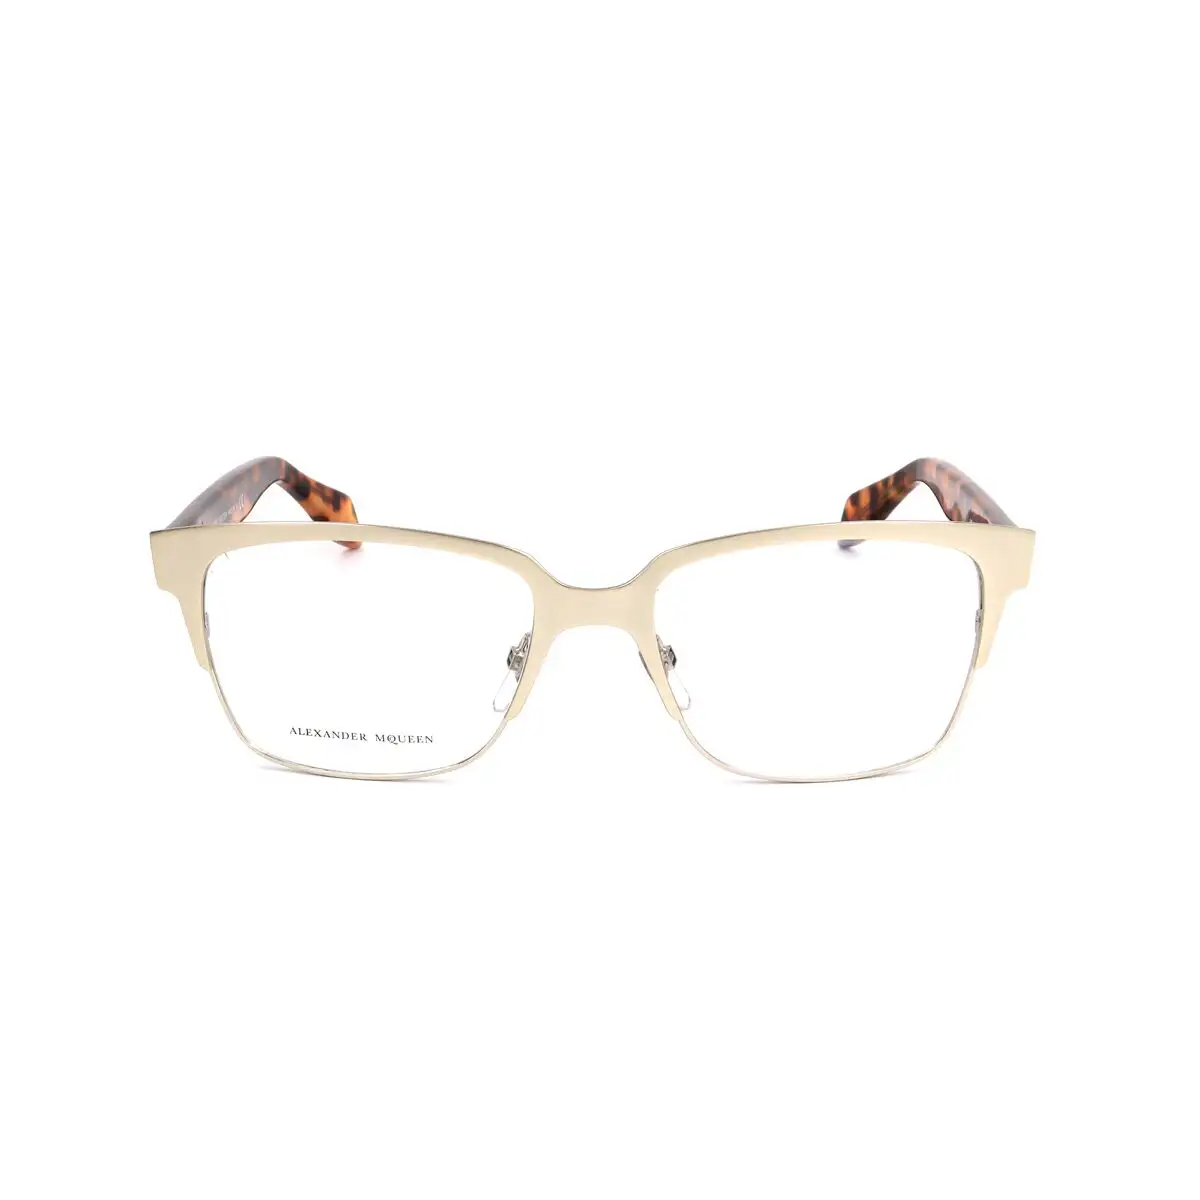 Monture de lunettes femme alexander mcqueen amq 4257 8so dore havana_1579. DIAYTAR SENEGAL - Où Choisir est un Plaisir. Explorez notre boutique en ligne et choisissez parmi des produits de qualité qui satisferont vos besoins et vos goûts.